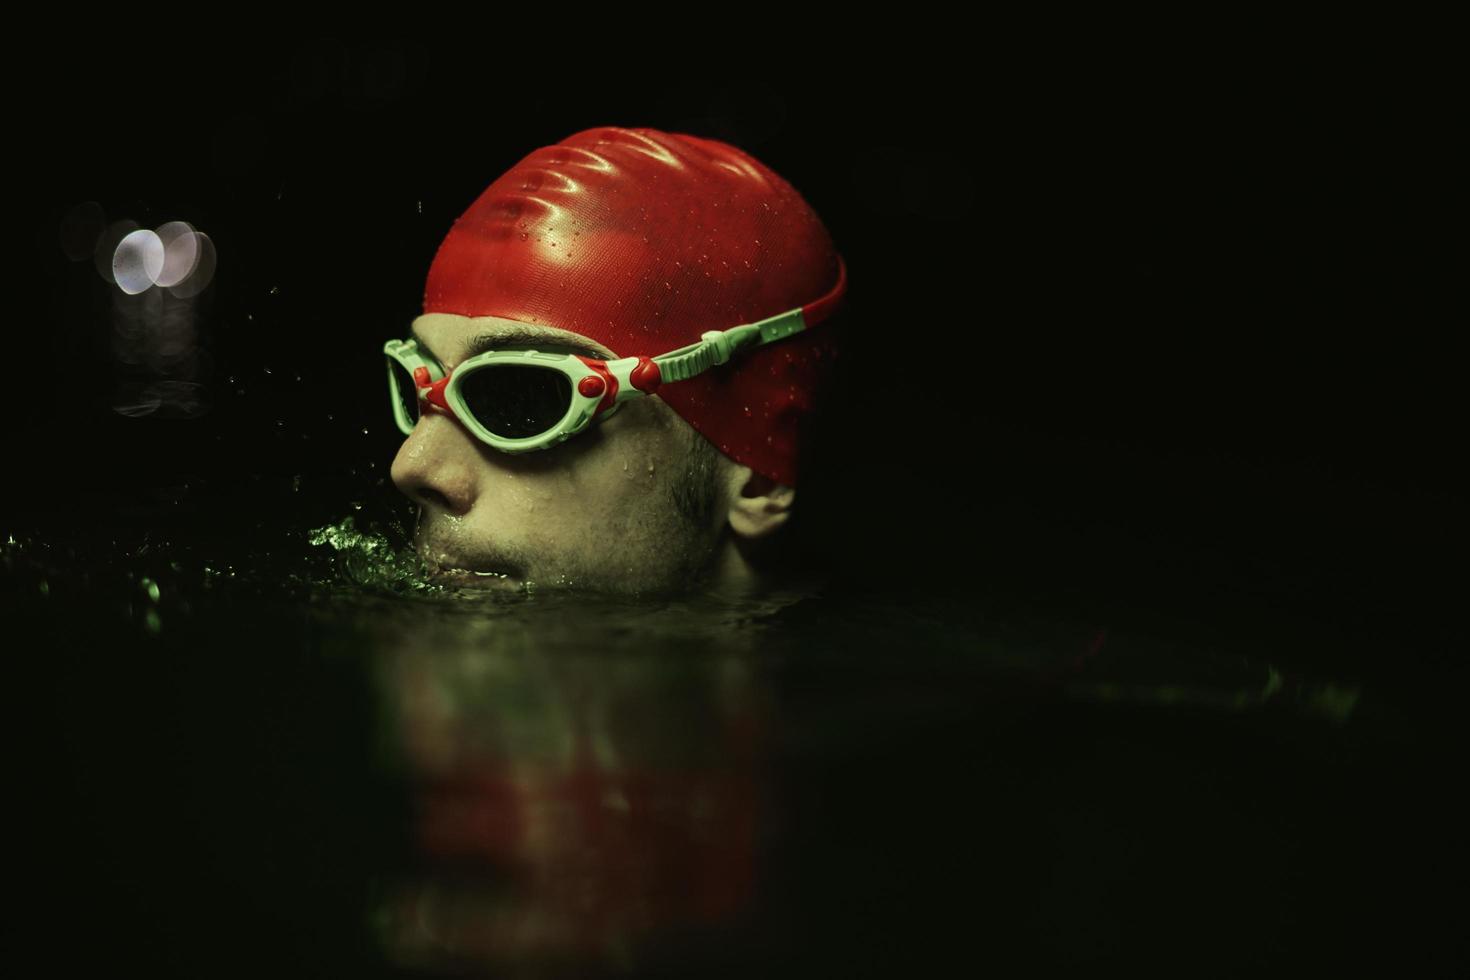 Authentischer Triathlet-Schwimmer, der während des harten Trainings im nächtlichen Neon-Gel-Licht eine Pause macht foto